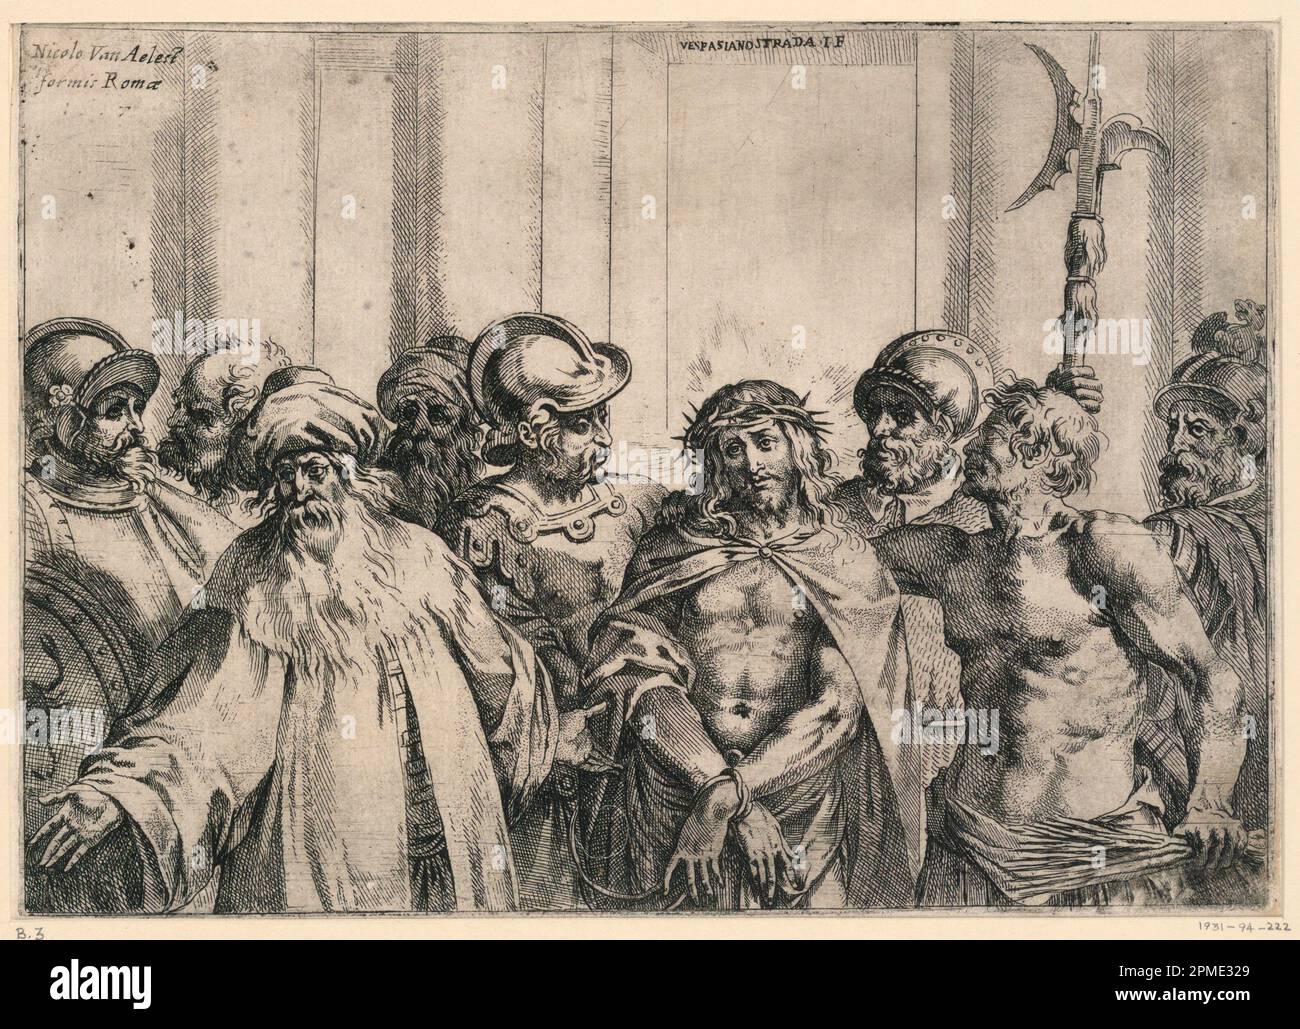 Stampa, il grande 'Ecce Homo'; Vespasiano strada (italiano, 1582 - 1622), Nicolaus van Aelst (fiammingo, ca. 1527 - 1613); Italia; incisione su carta; 18,3 x 25,7 cm (7 3/16 x 10 1/8 pollici) Foto Stock